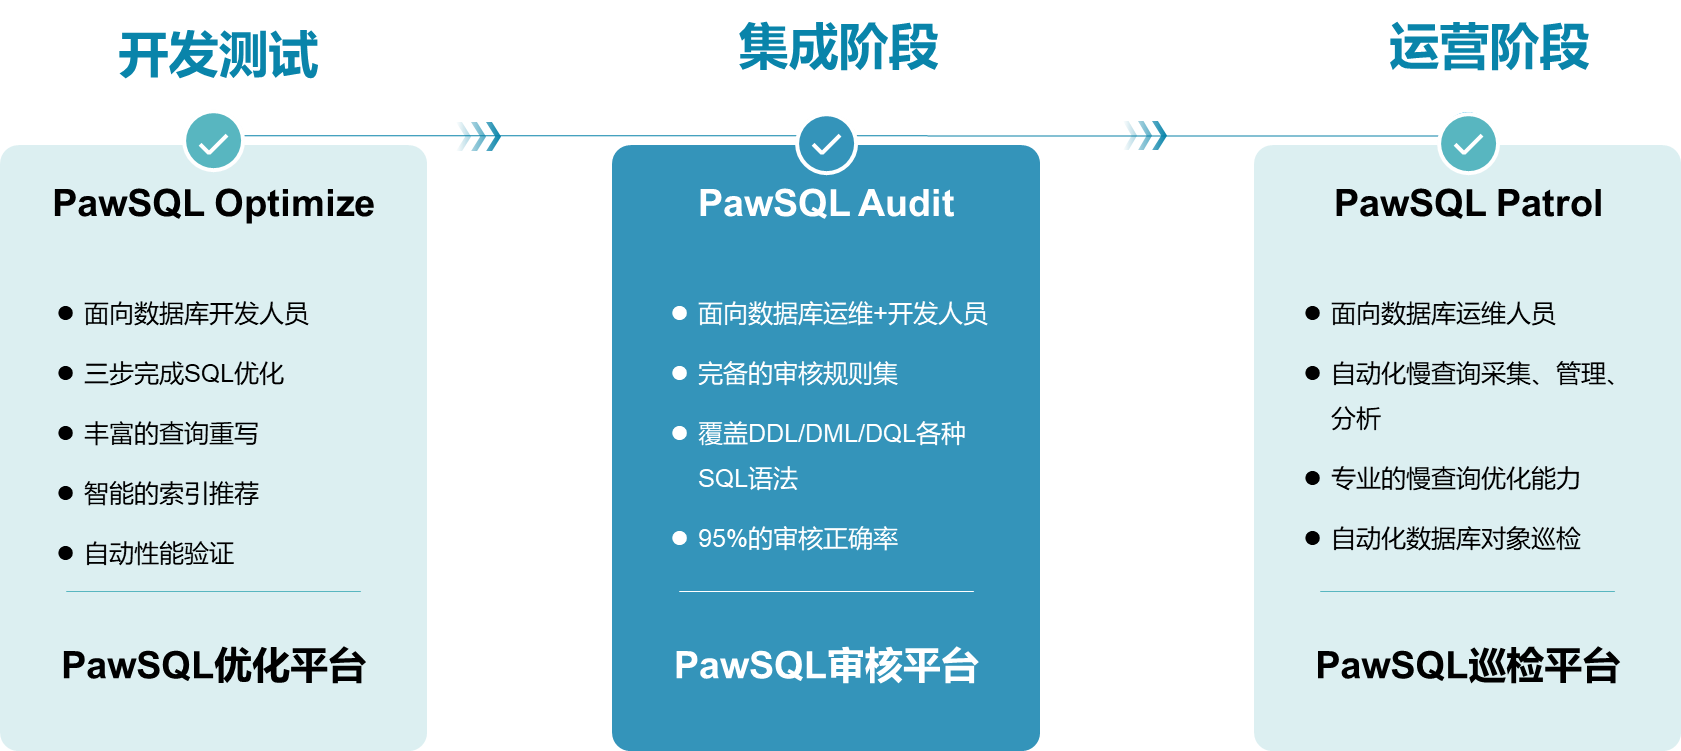 PawSQL产品